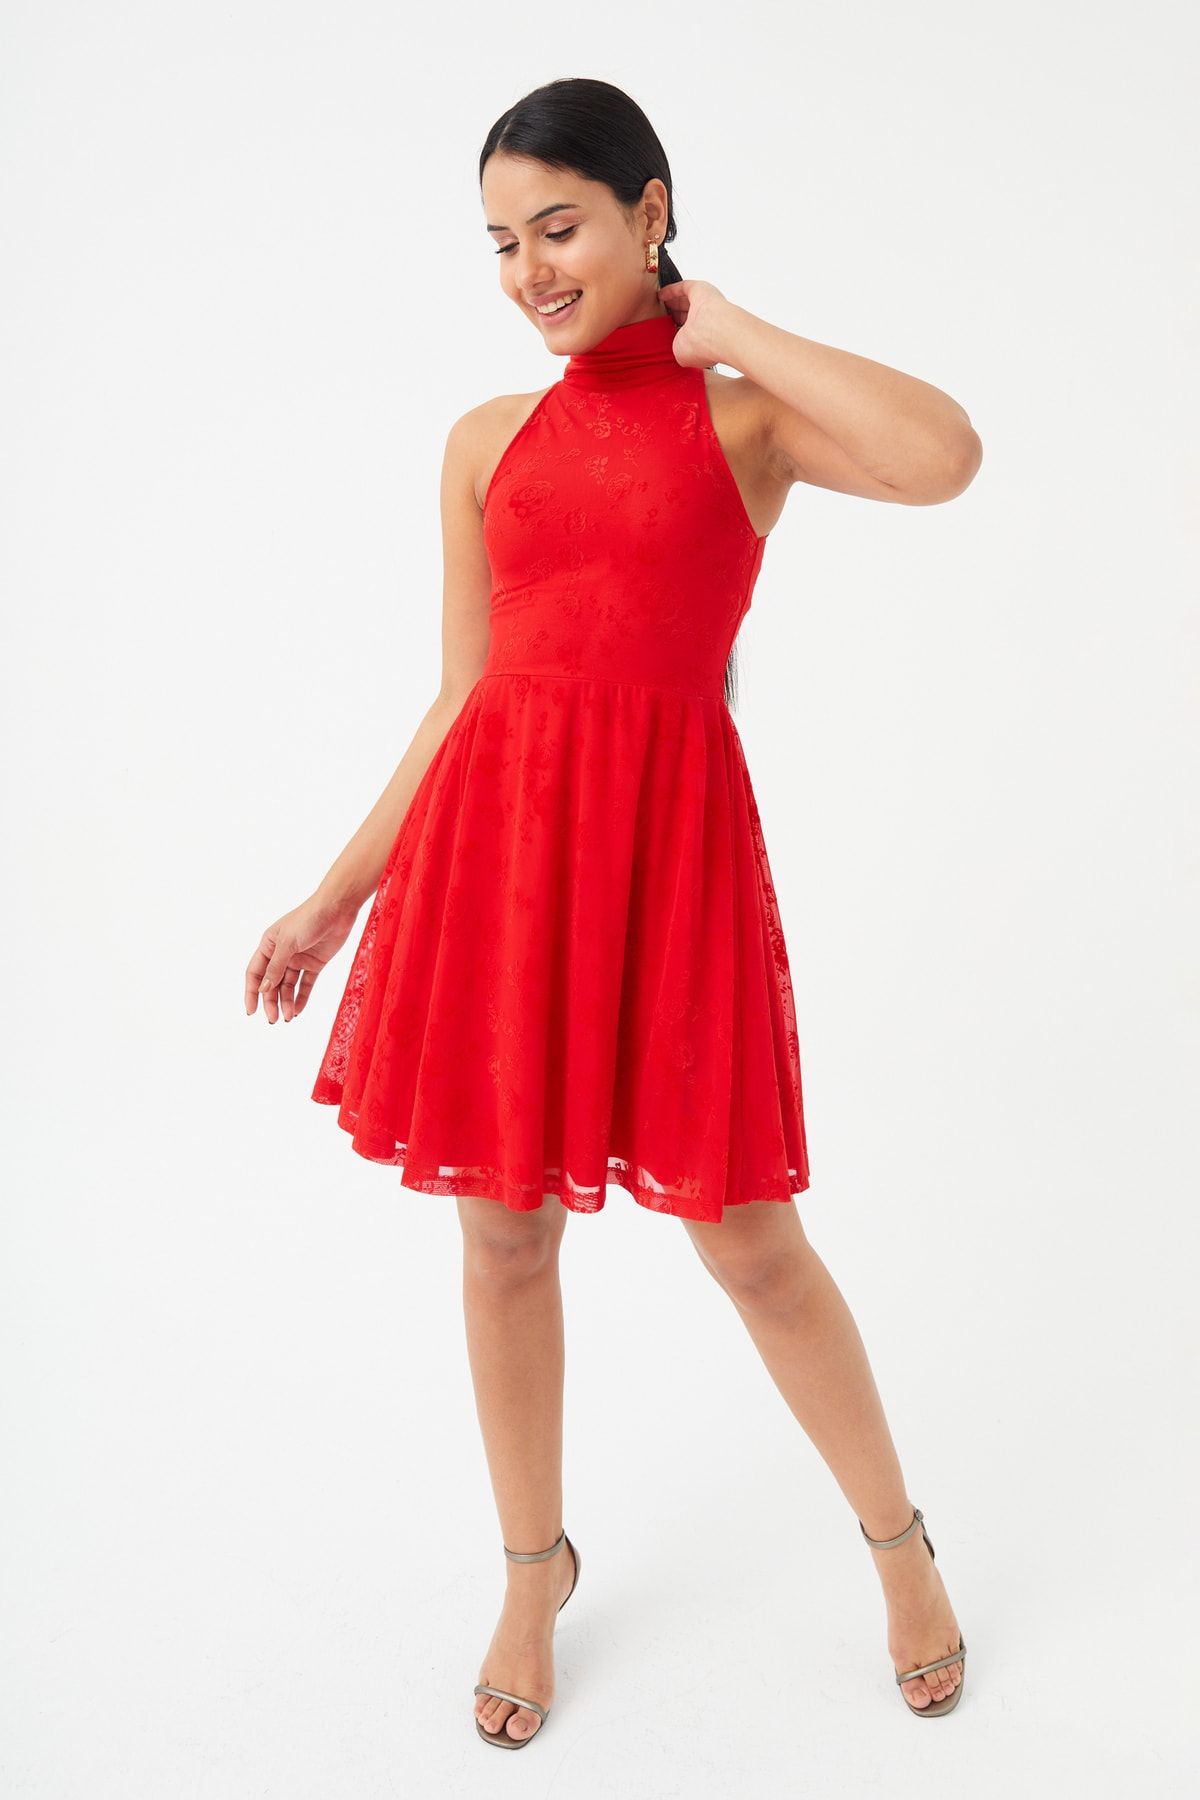 Hanna's Kadın Kırmızı Flok Baskı Çiçekli Kloş Örme Elbise